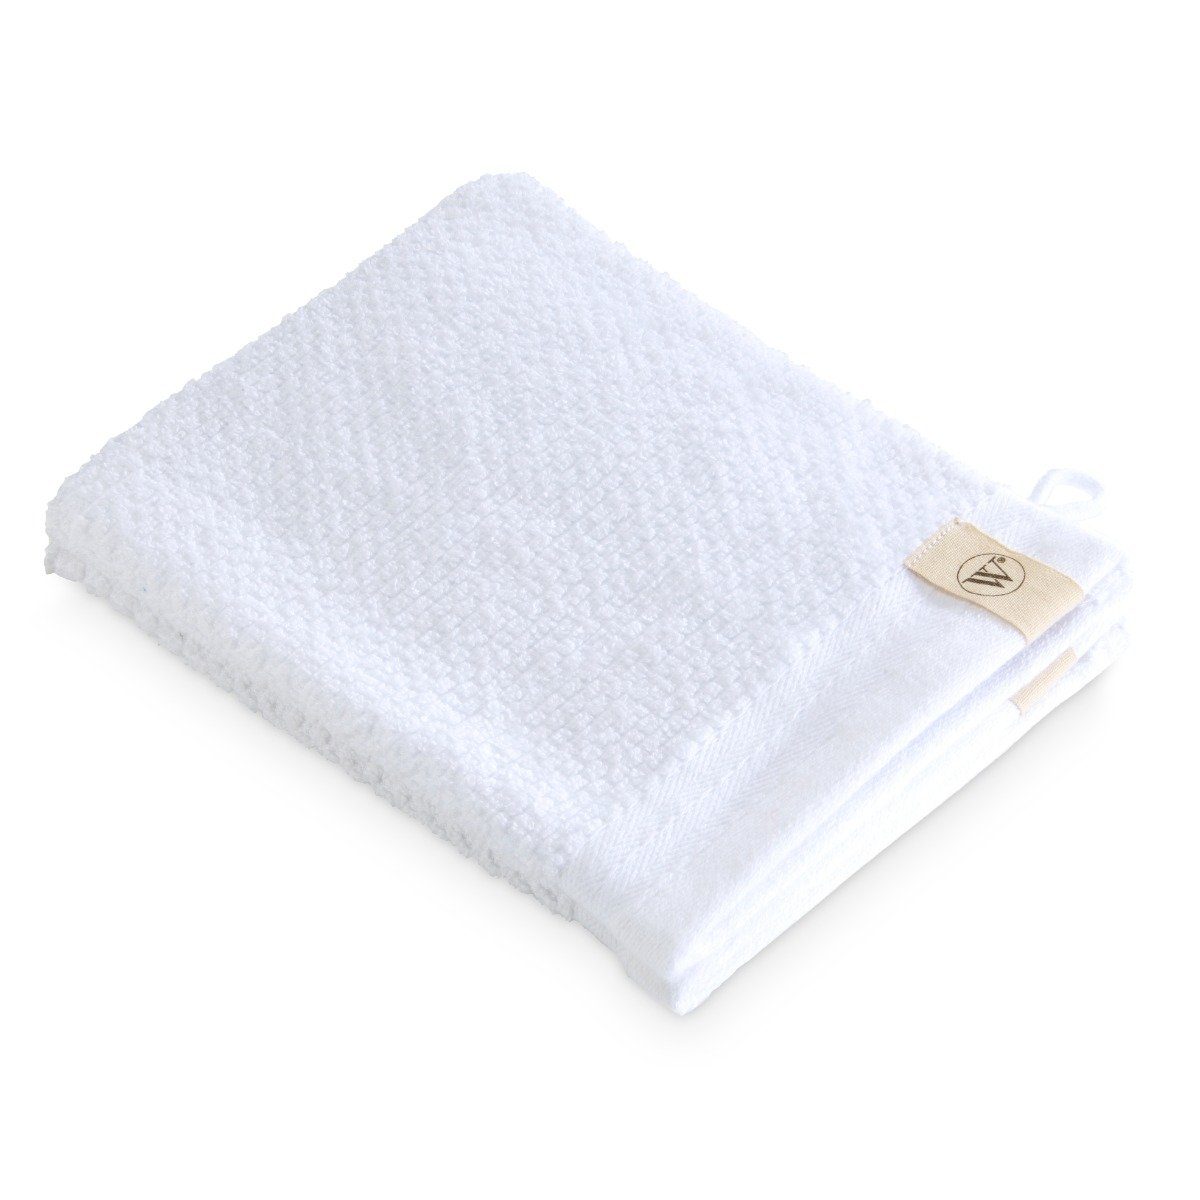 Walra Handtuch Waschhandschuh Soft Cotton Popcorn Weiß - 2x 16x21 cm, Baumwolle (1-St)